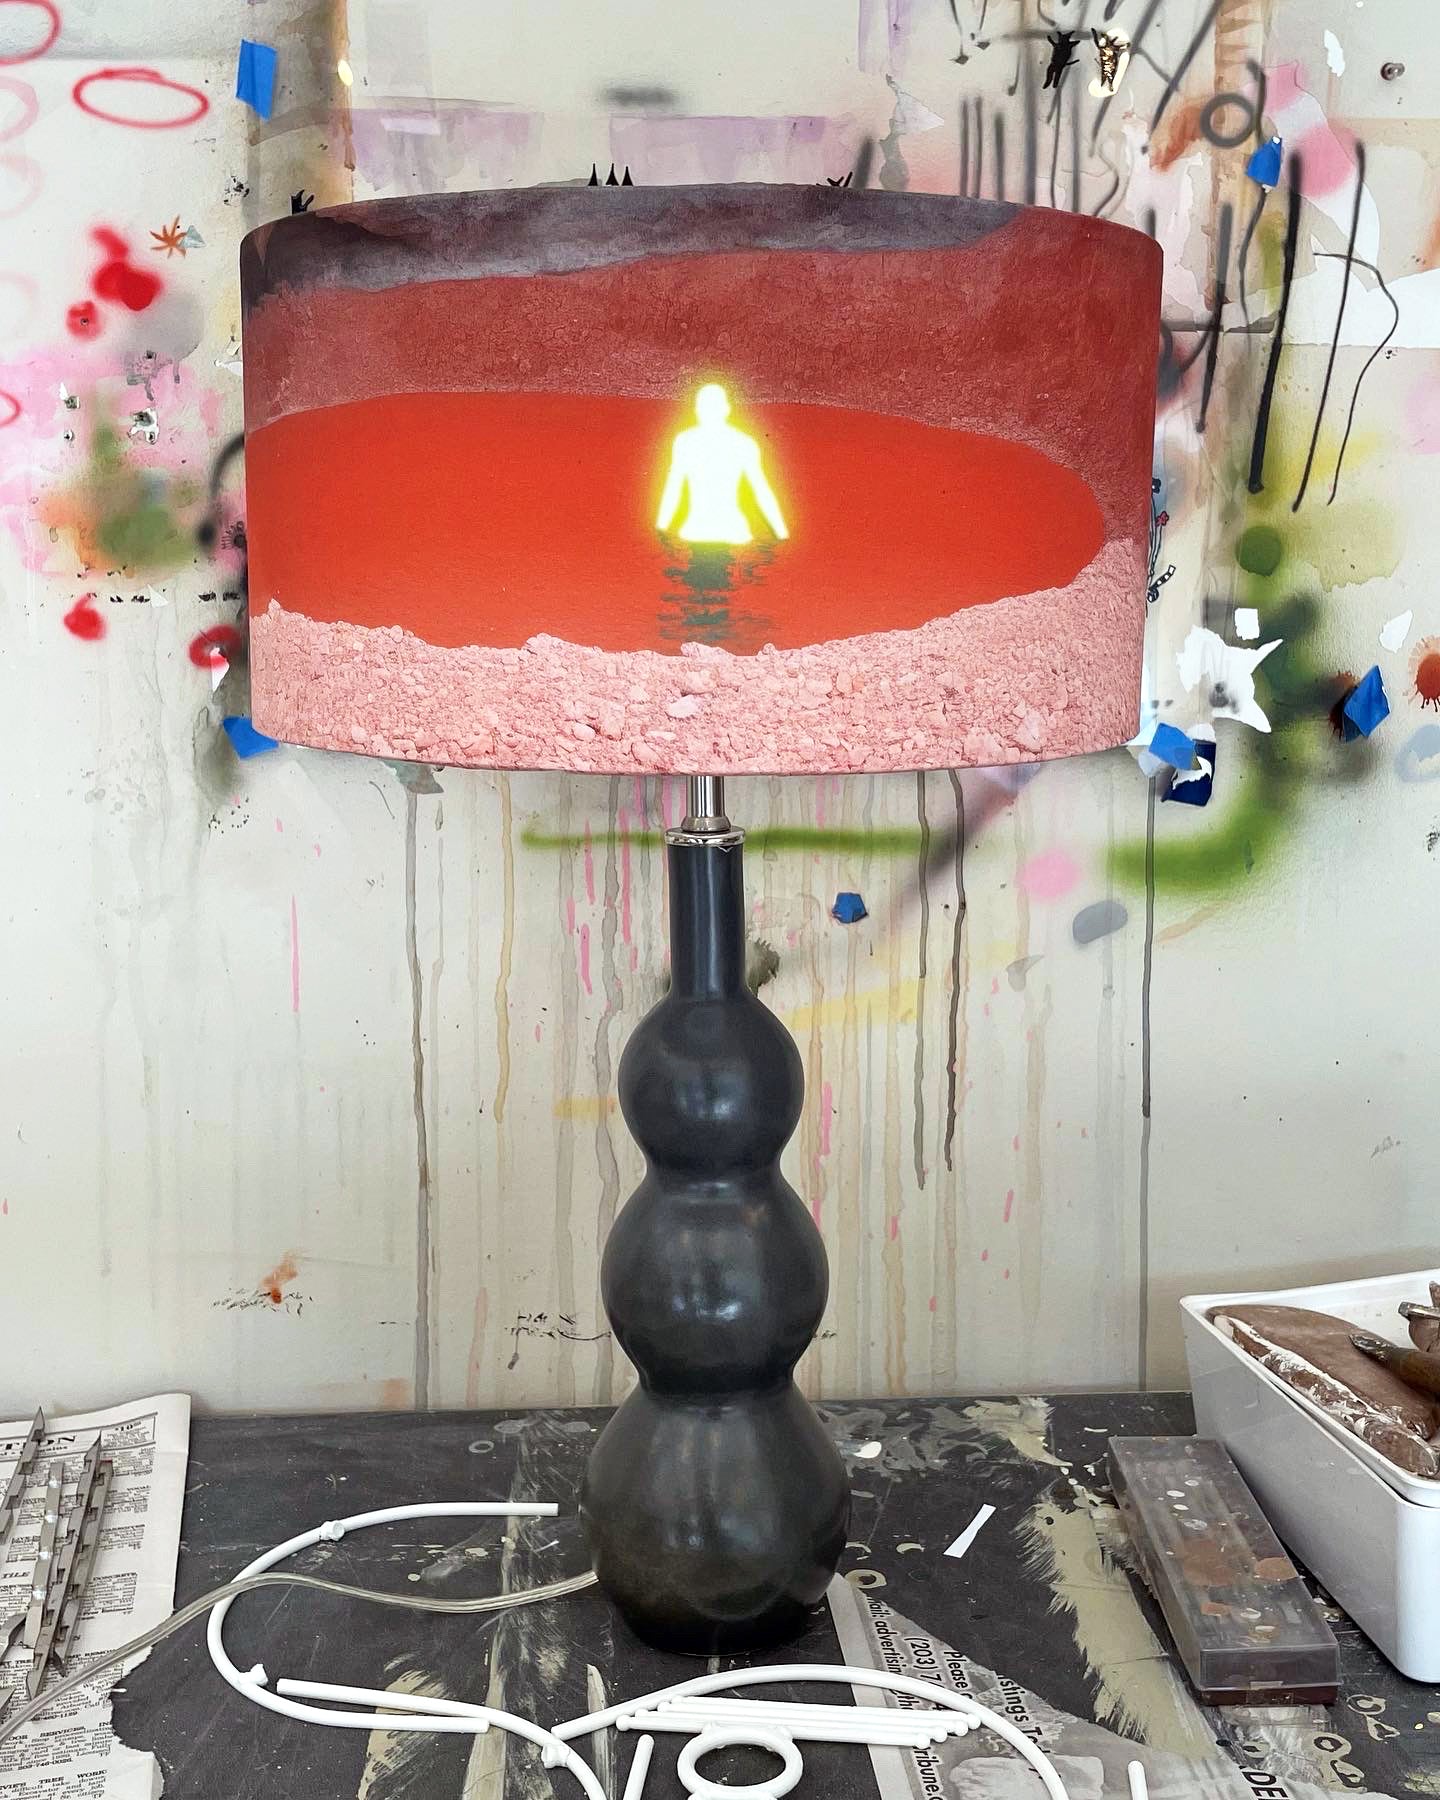 Ceramic Lamp - Magma Shade